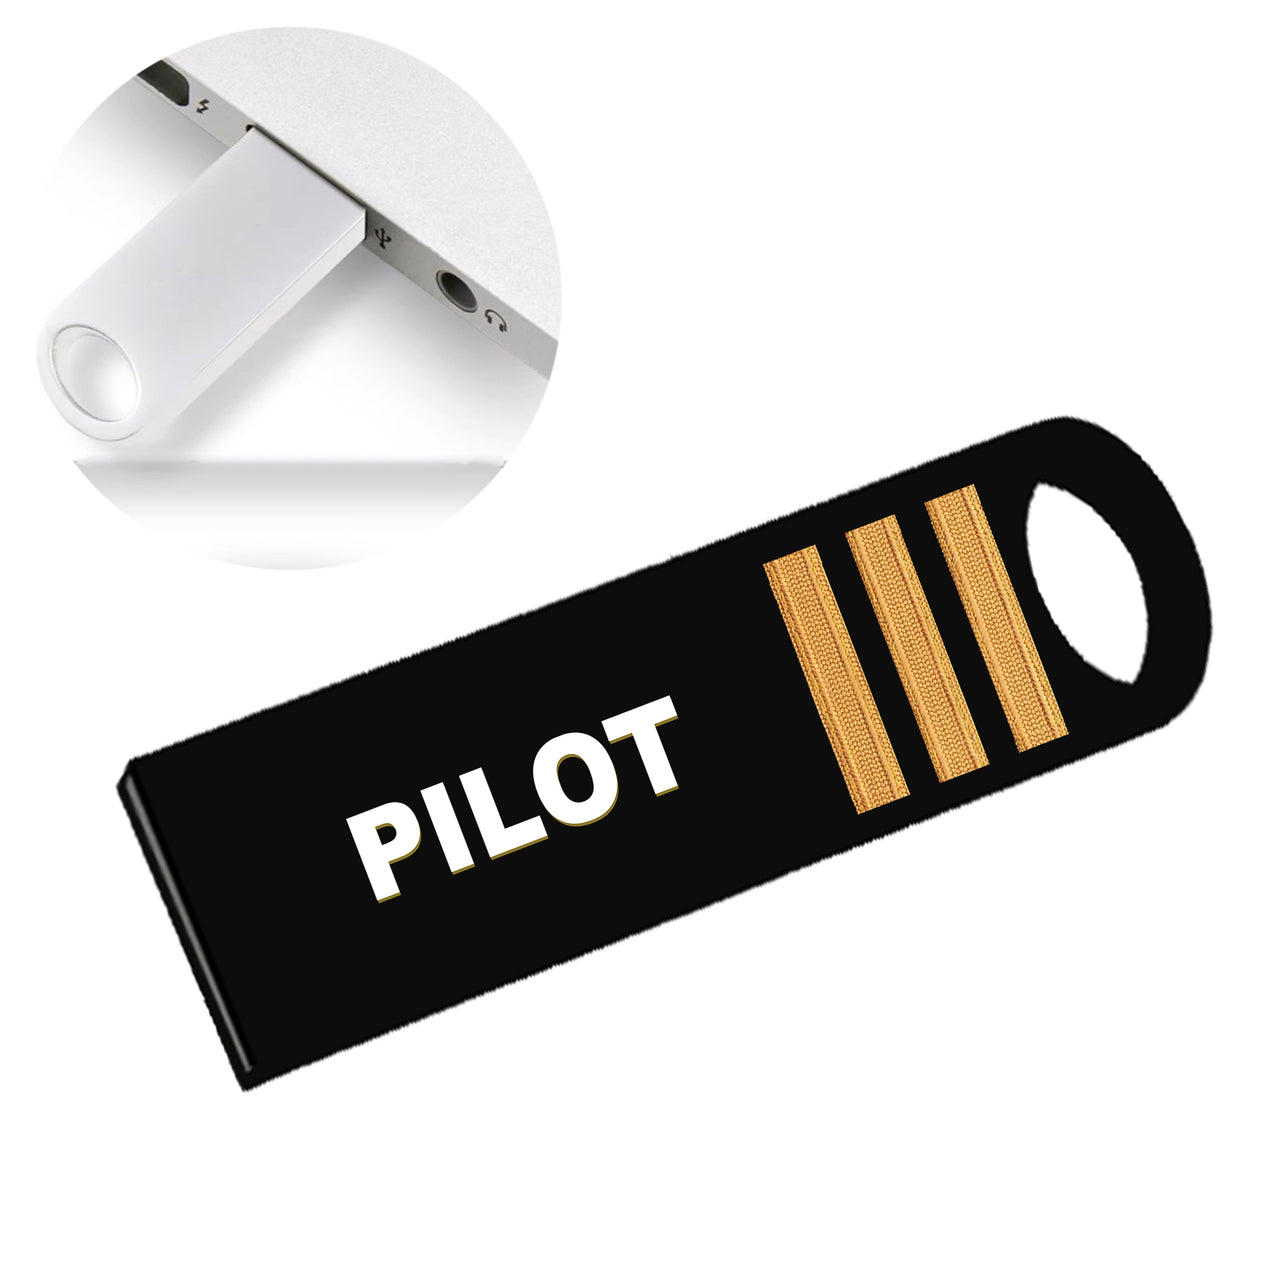 PILOT & Pilot Epaulettes (4,3,2 Lines) Designed Waterproof USB Devices